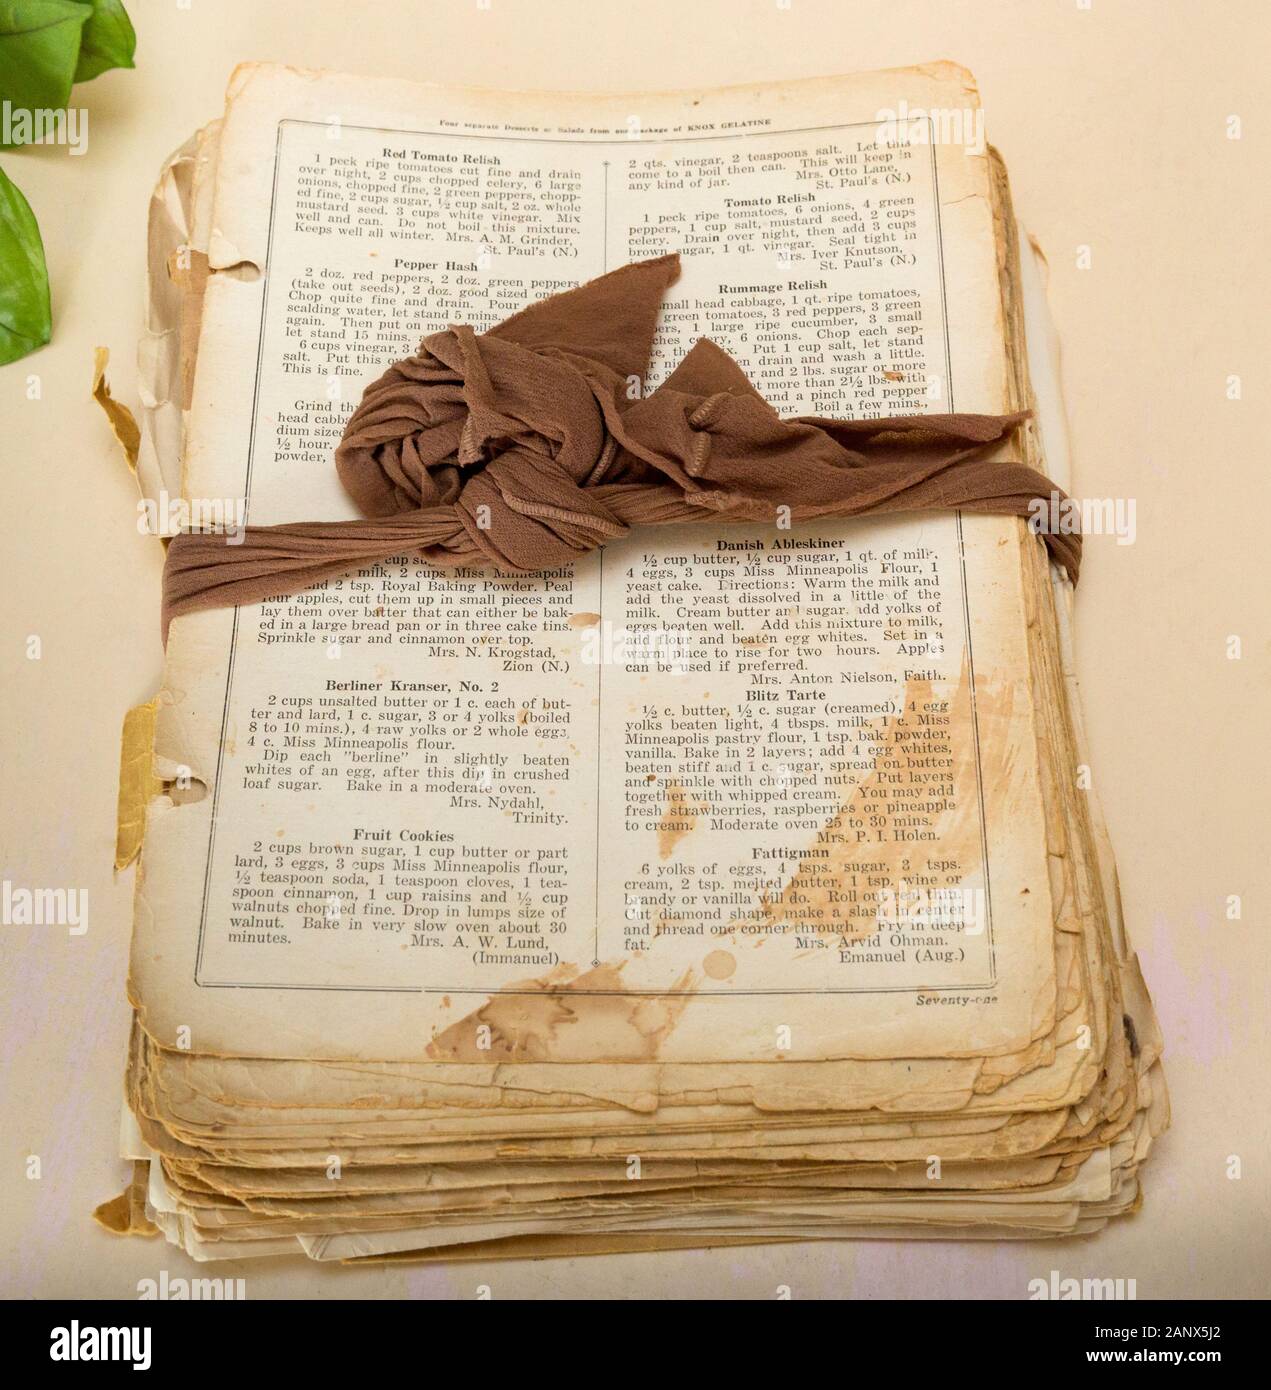 Una nonna ricetta del libro di cucina con le pagine legate insieme da una calza in nylon. In basso sulla destra vi è una ricetta per il danese Aebleskiver o Dani Foto Stock